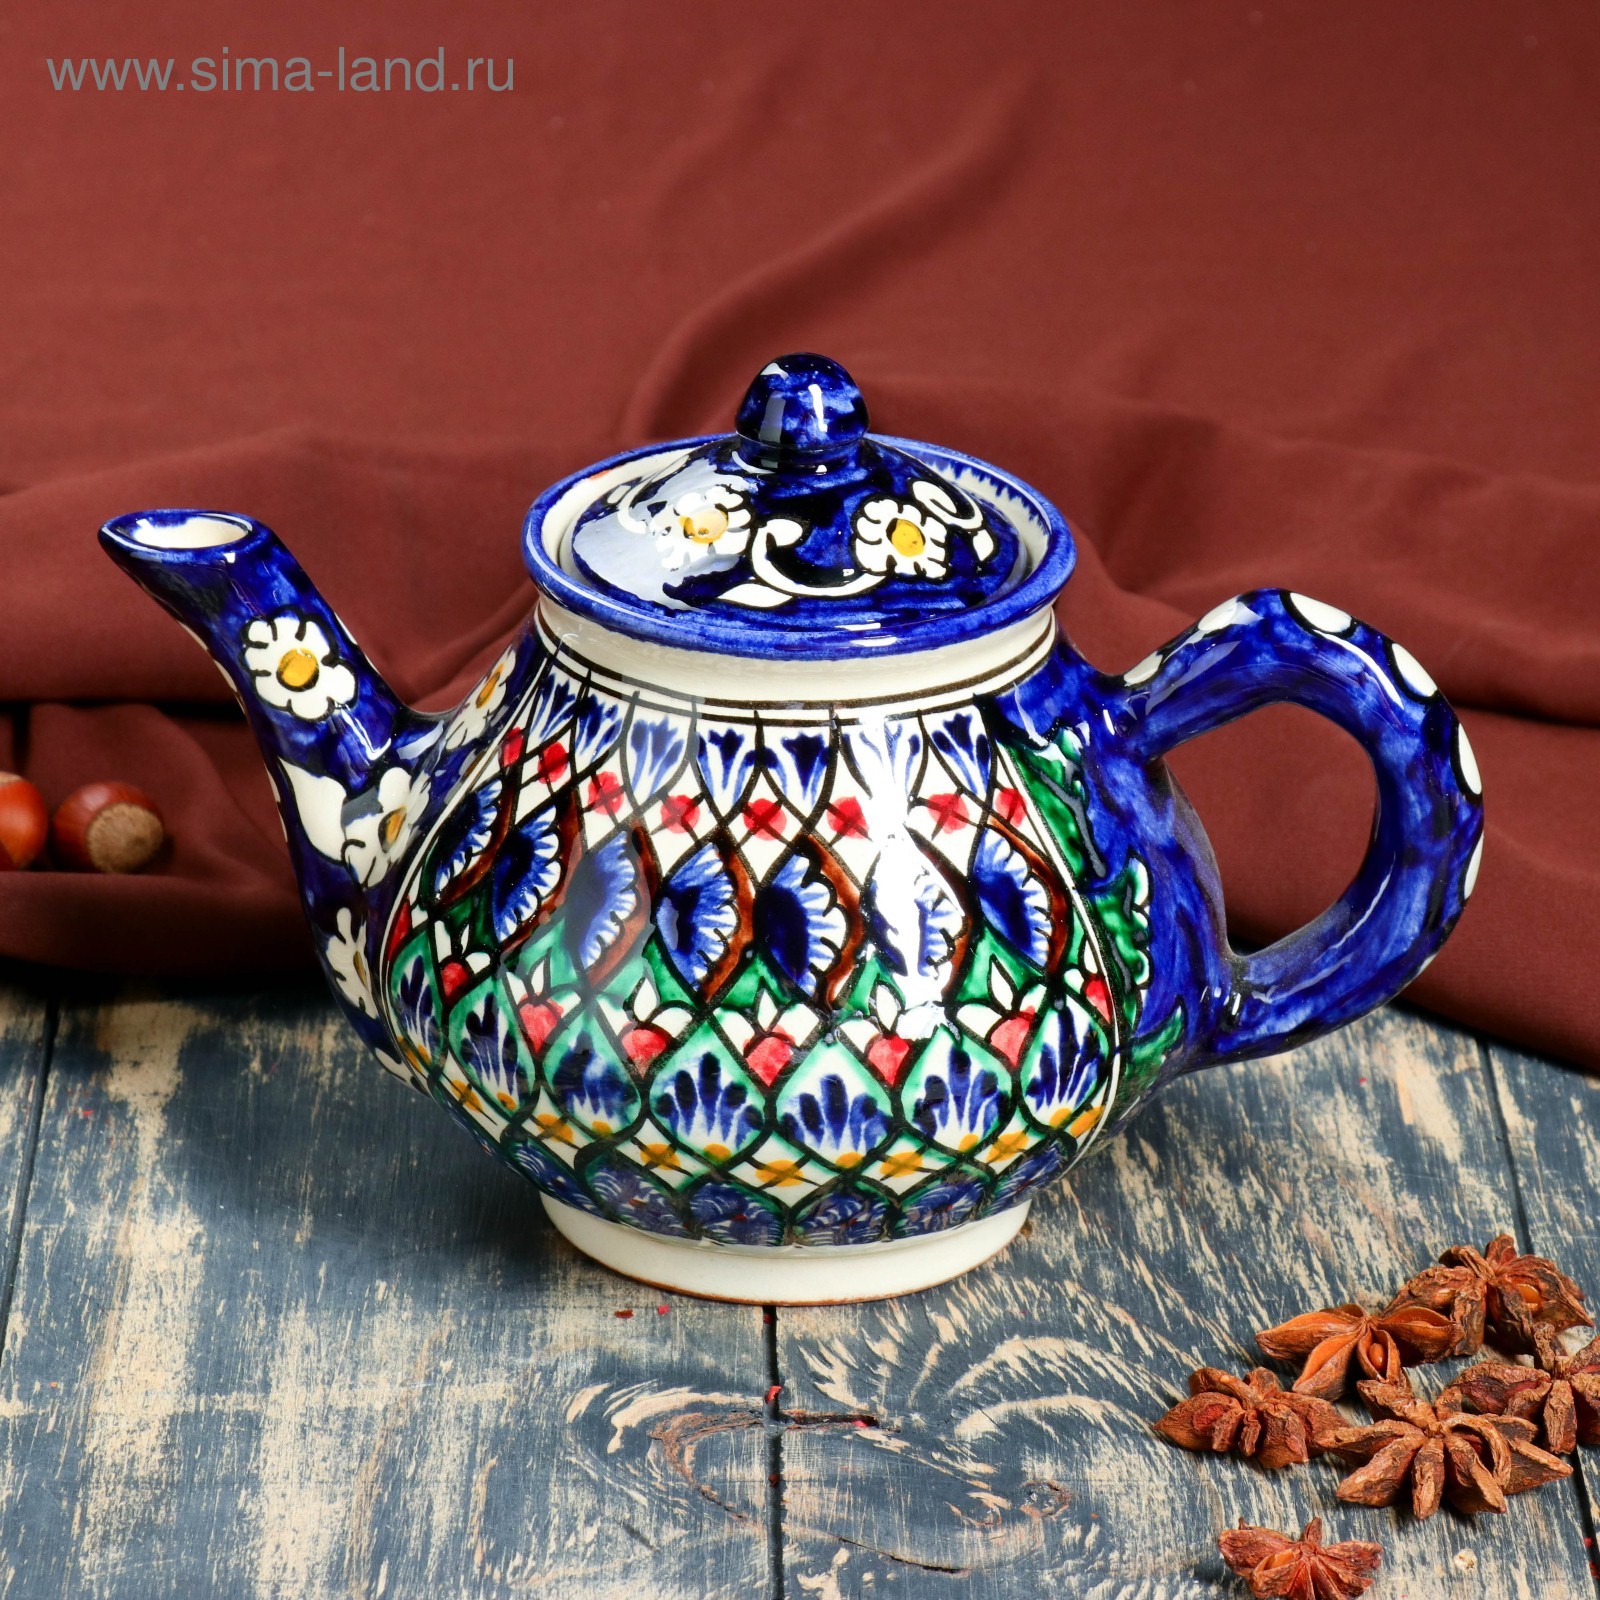 Узбекский чайник. Чайник Риштанская керамика. Заварочный чайник Риштанская керамика. Чайник 700мл Риштан синий керамика. Чайн к Риштанская керамика.